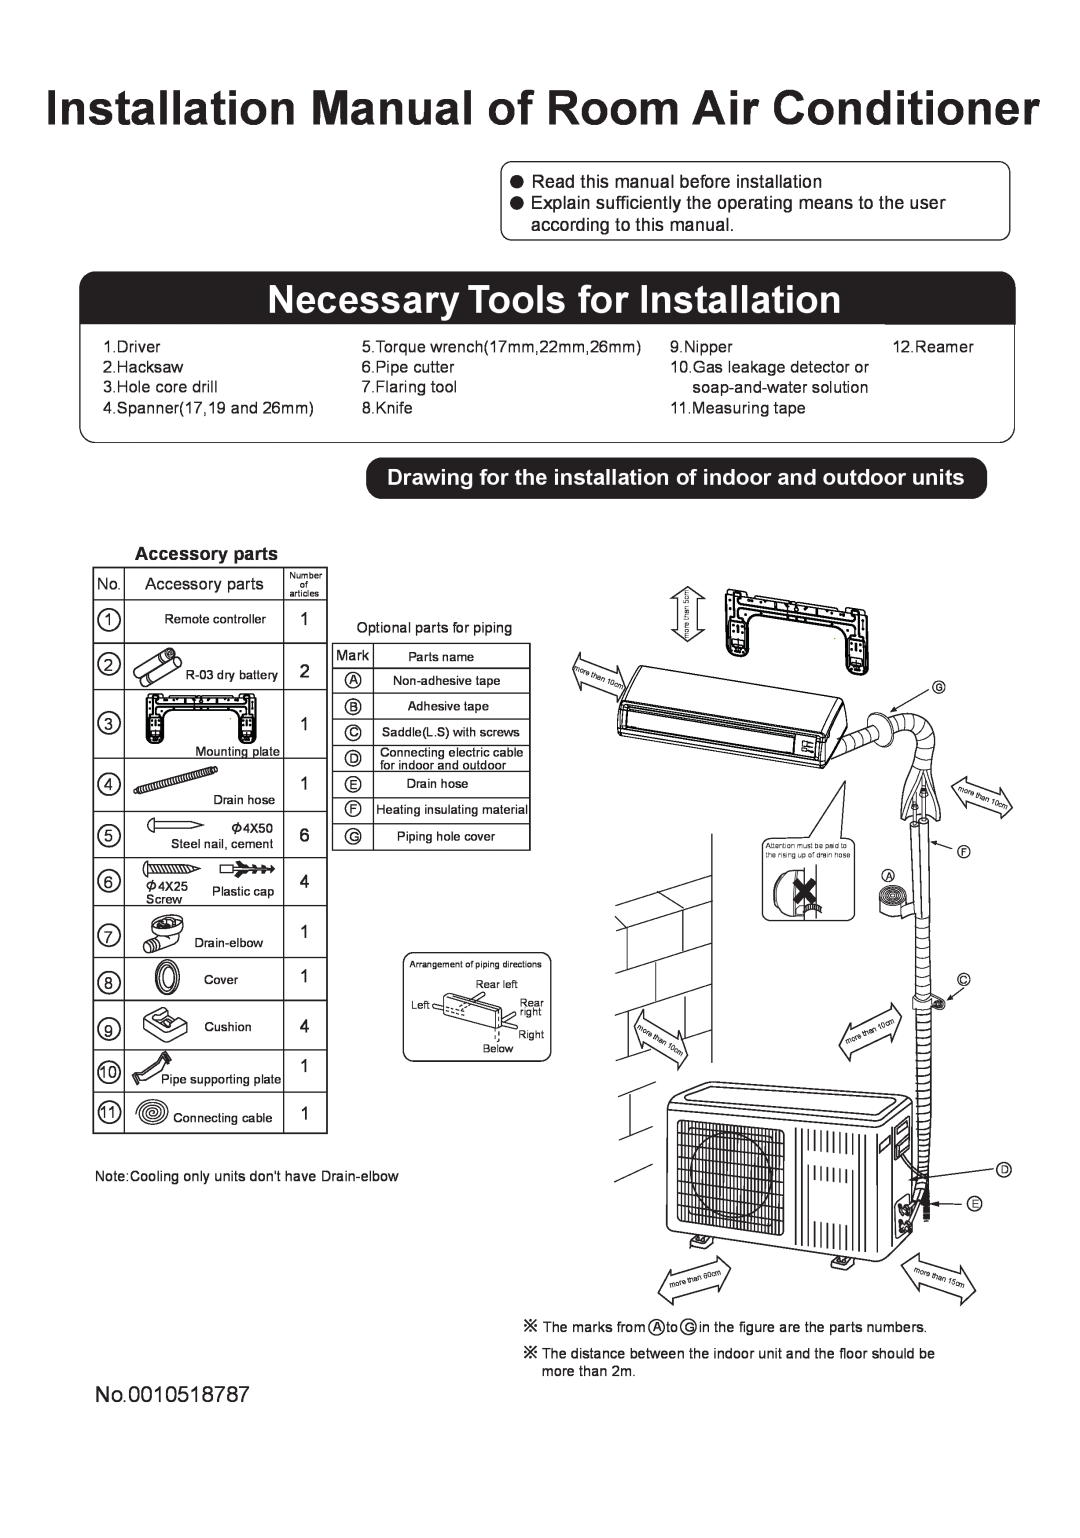 Haier HSU-09LEK03 installation manual Installation Manual of Room Air Conditioner, Necessary Tools for Installation 